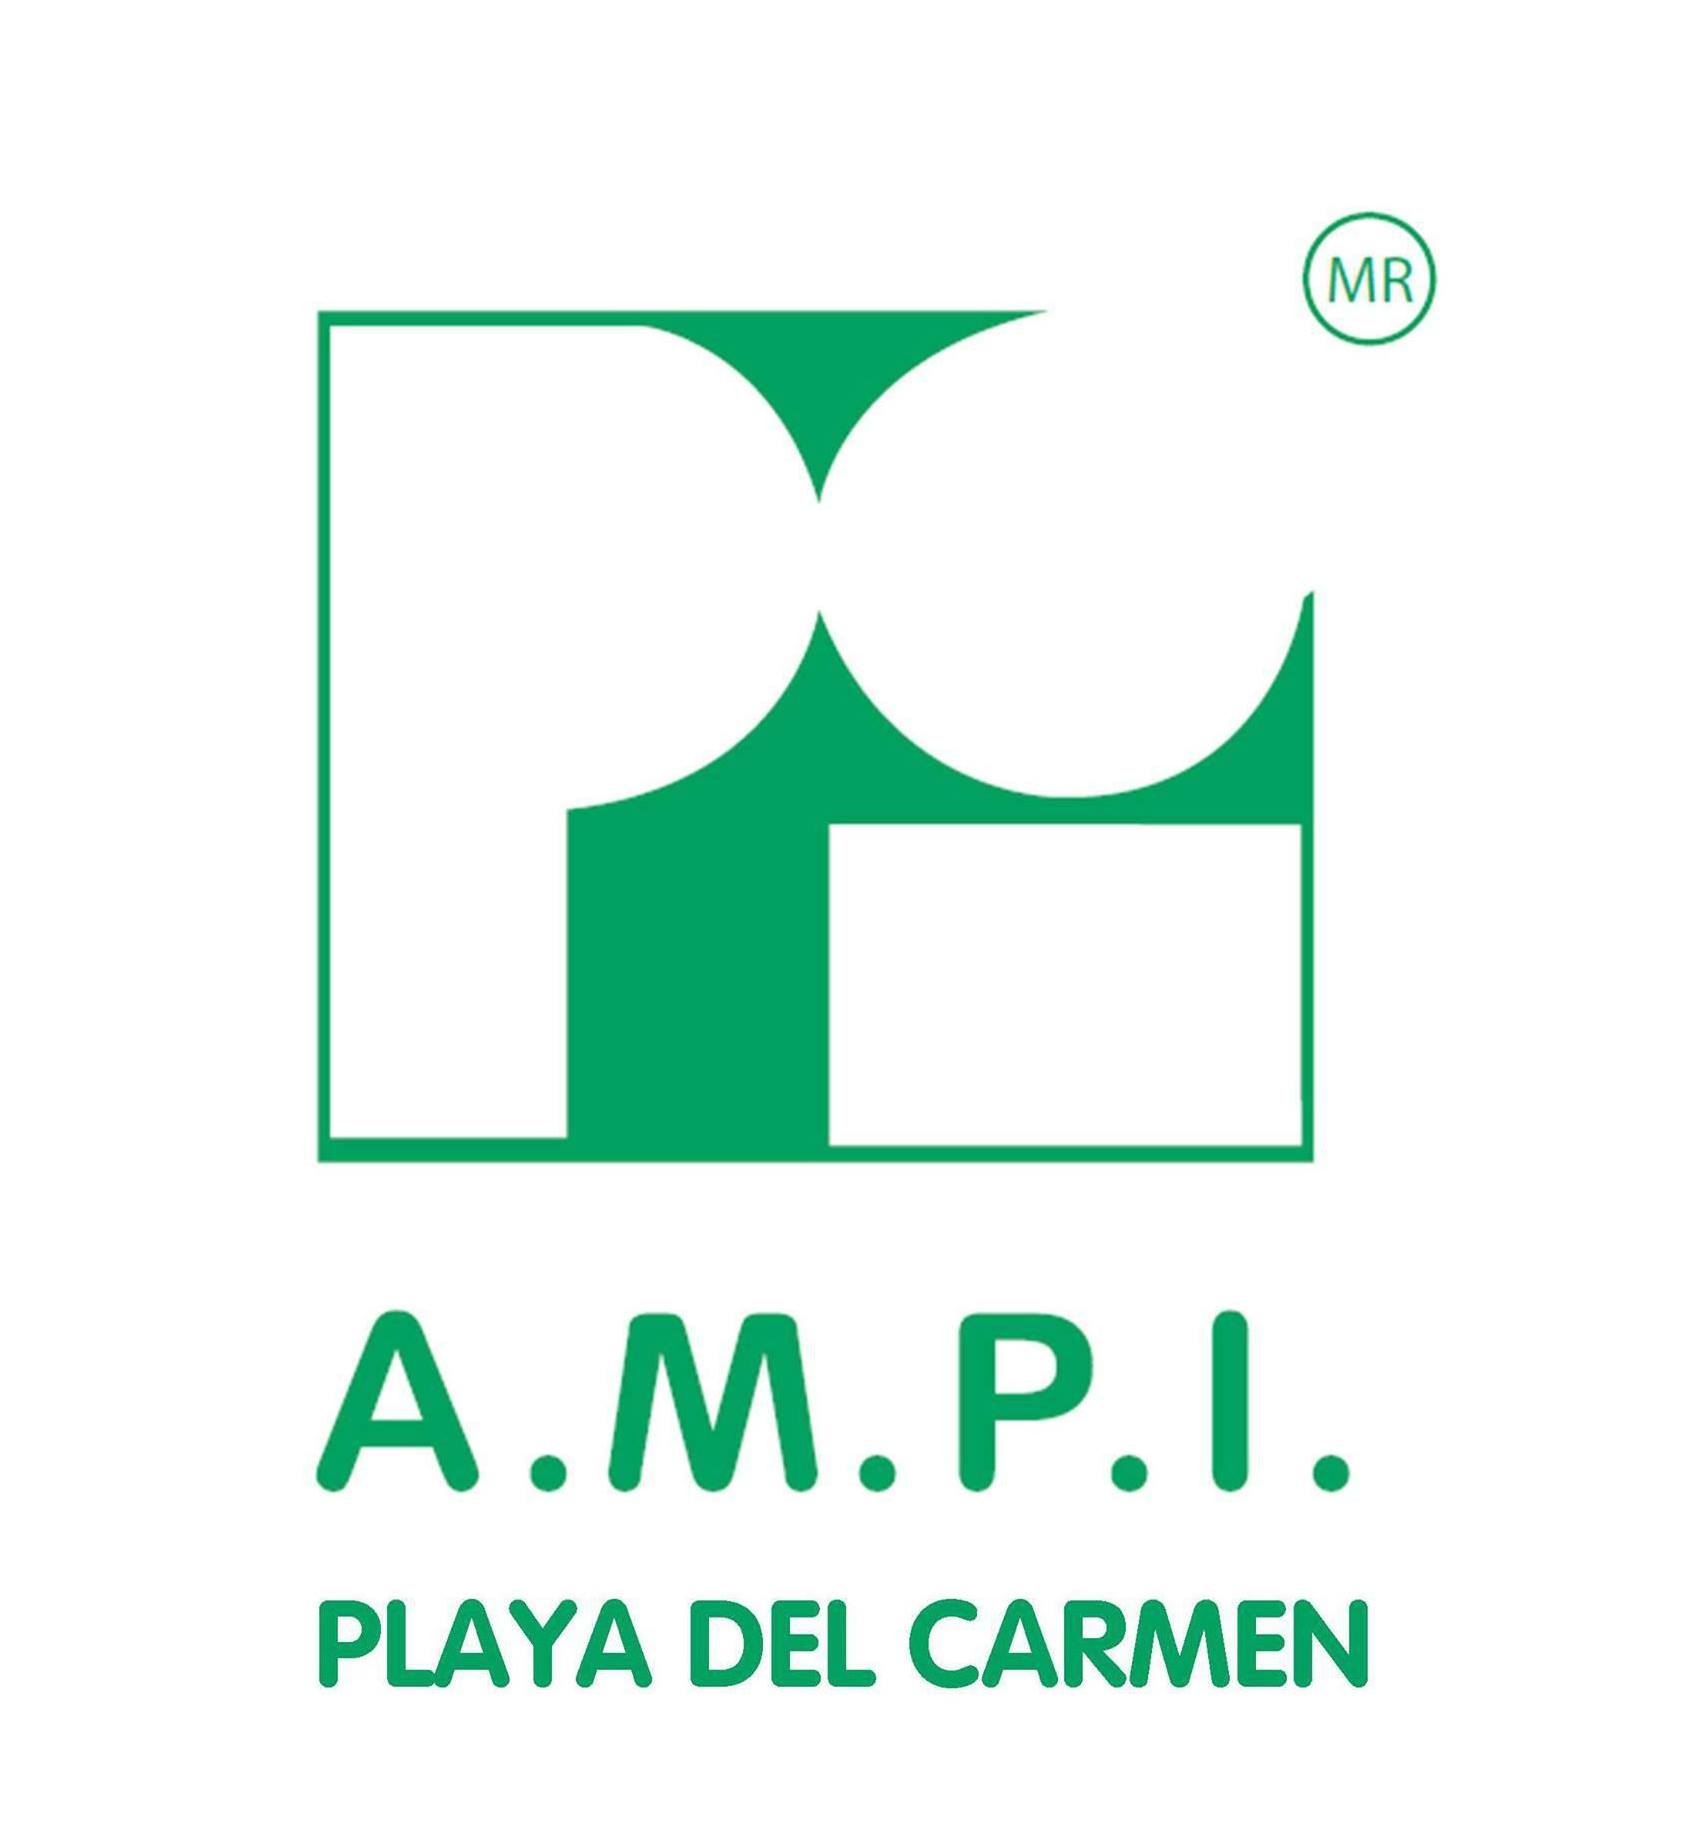 Zoom Playa Real Estate is a proud Member of AMPI Playa del Carmen